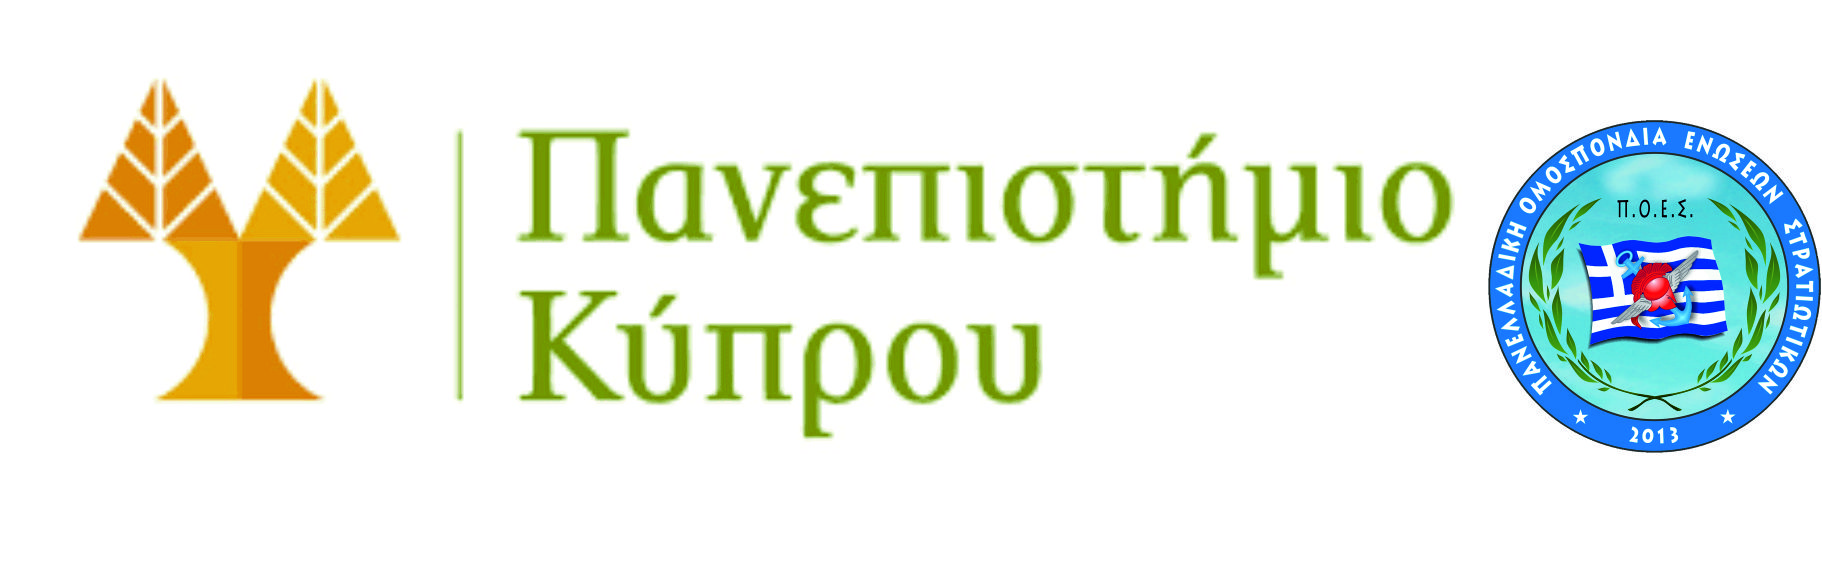 ΓΕΕΘΑ - Πρόγραμμα μεταπτυχιακών σπουδών στο Πανεπιστήμιο Κύπρου